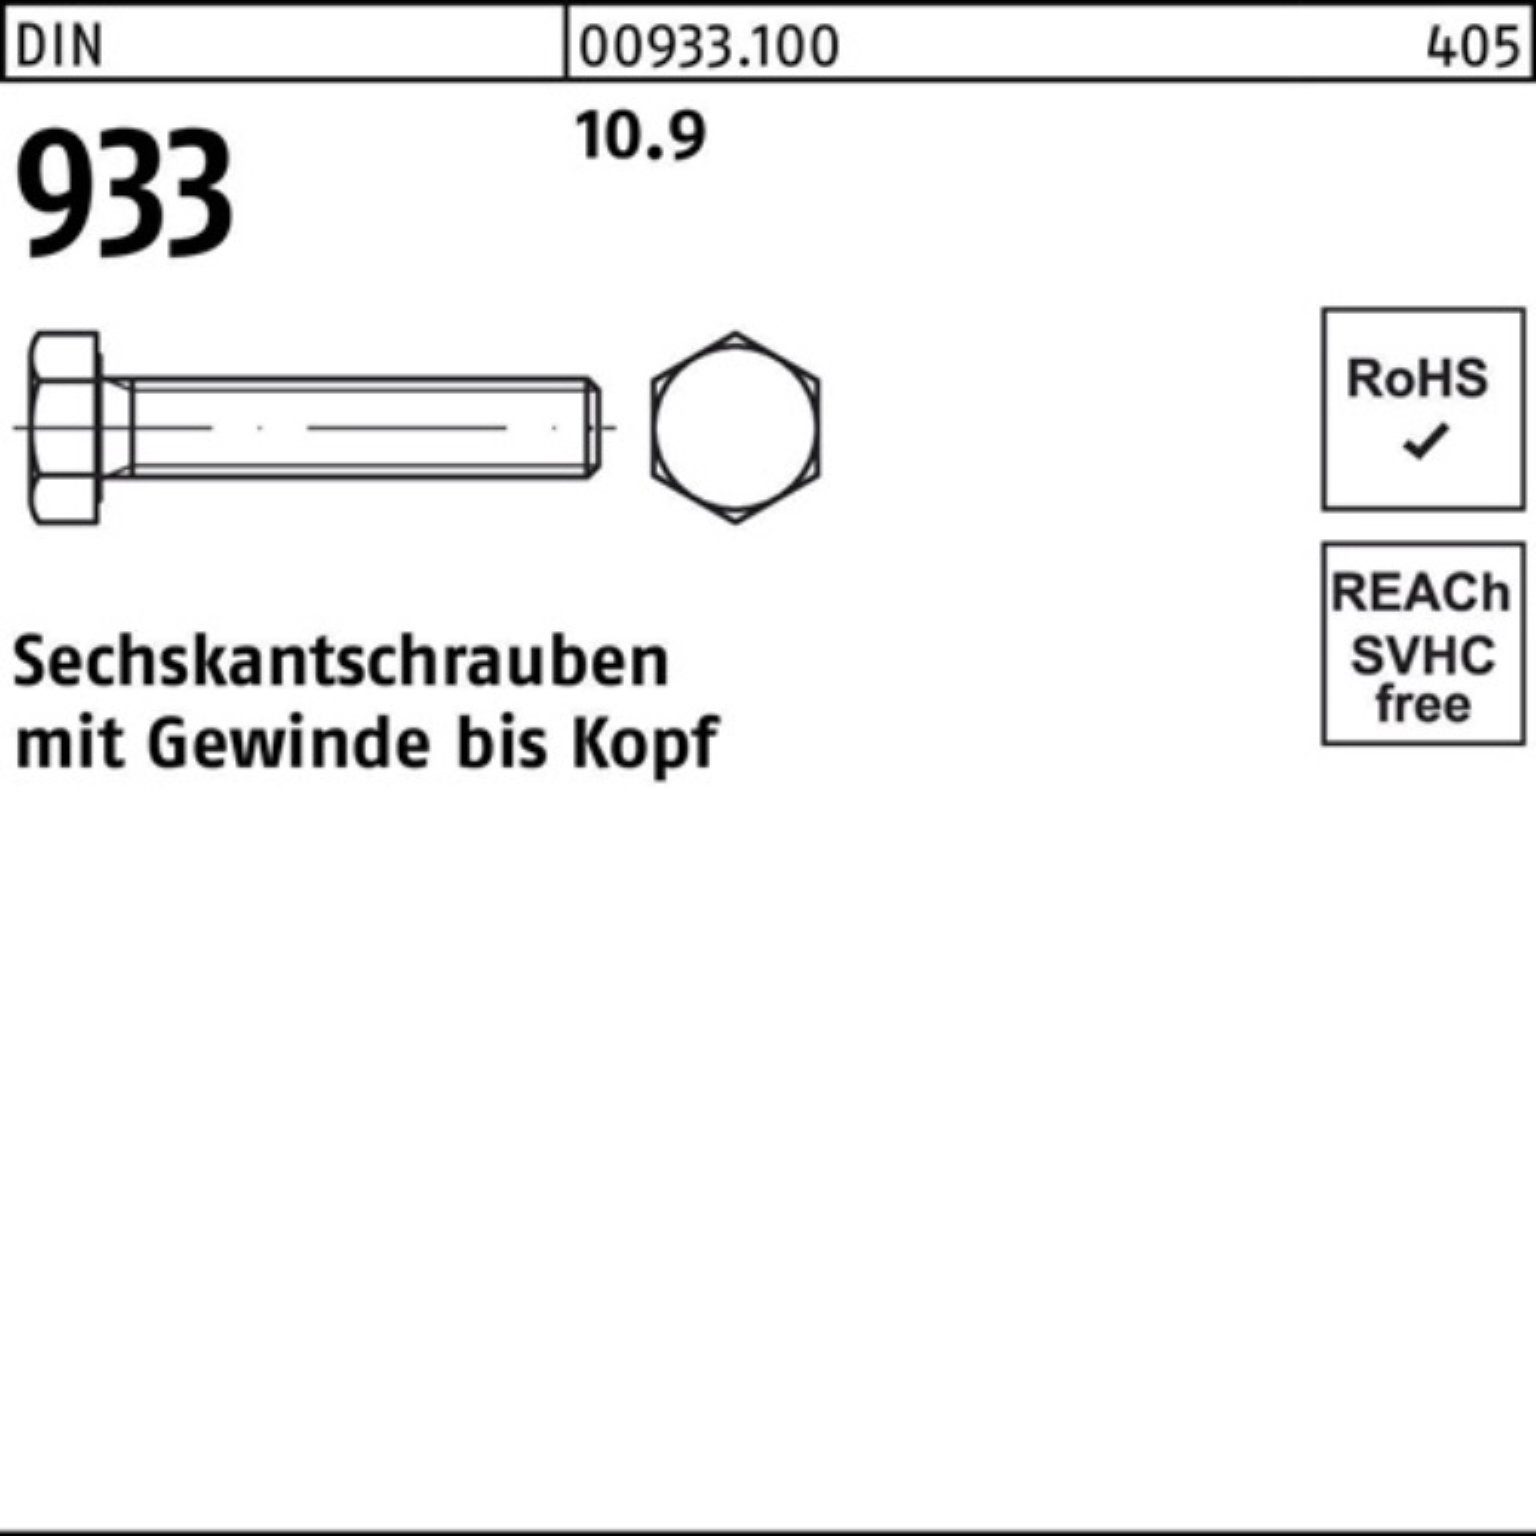 Reyher Sechskantschraube 100er VG 10.9 933 1 DIN M16x Stück 933 Pack 260 Sechskantschraube DIN